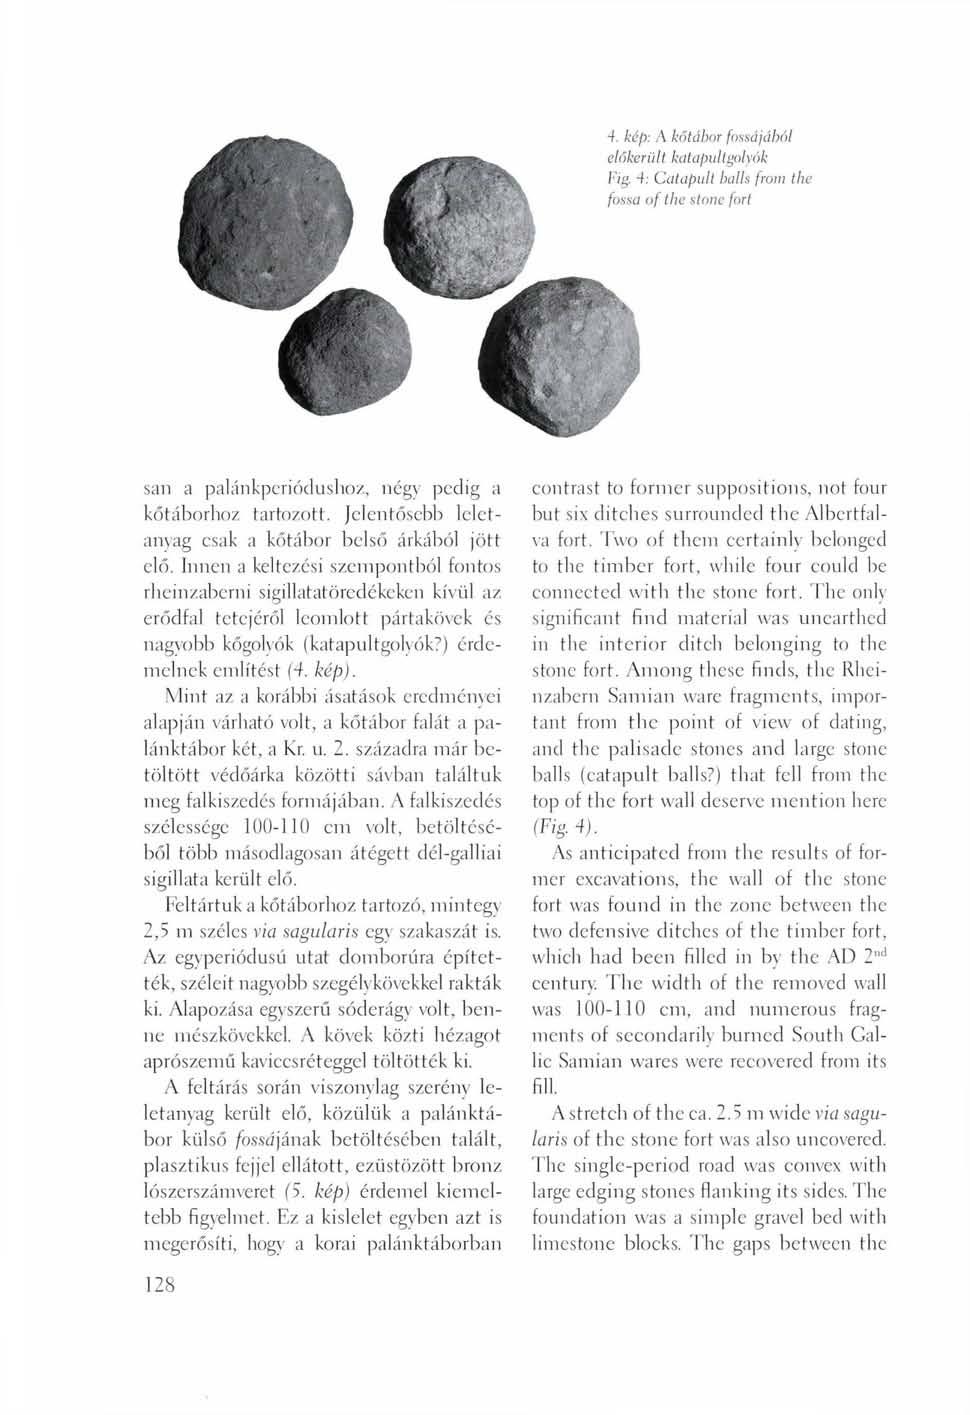 4. kép: A kőtábor fossájából előkér ült katap ult golyók Fig. 4: Catapult balls from the fossa of the stone fort sari a palánkperiódushoz, négy pedig a kőtáborhoz tartozott.